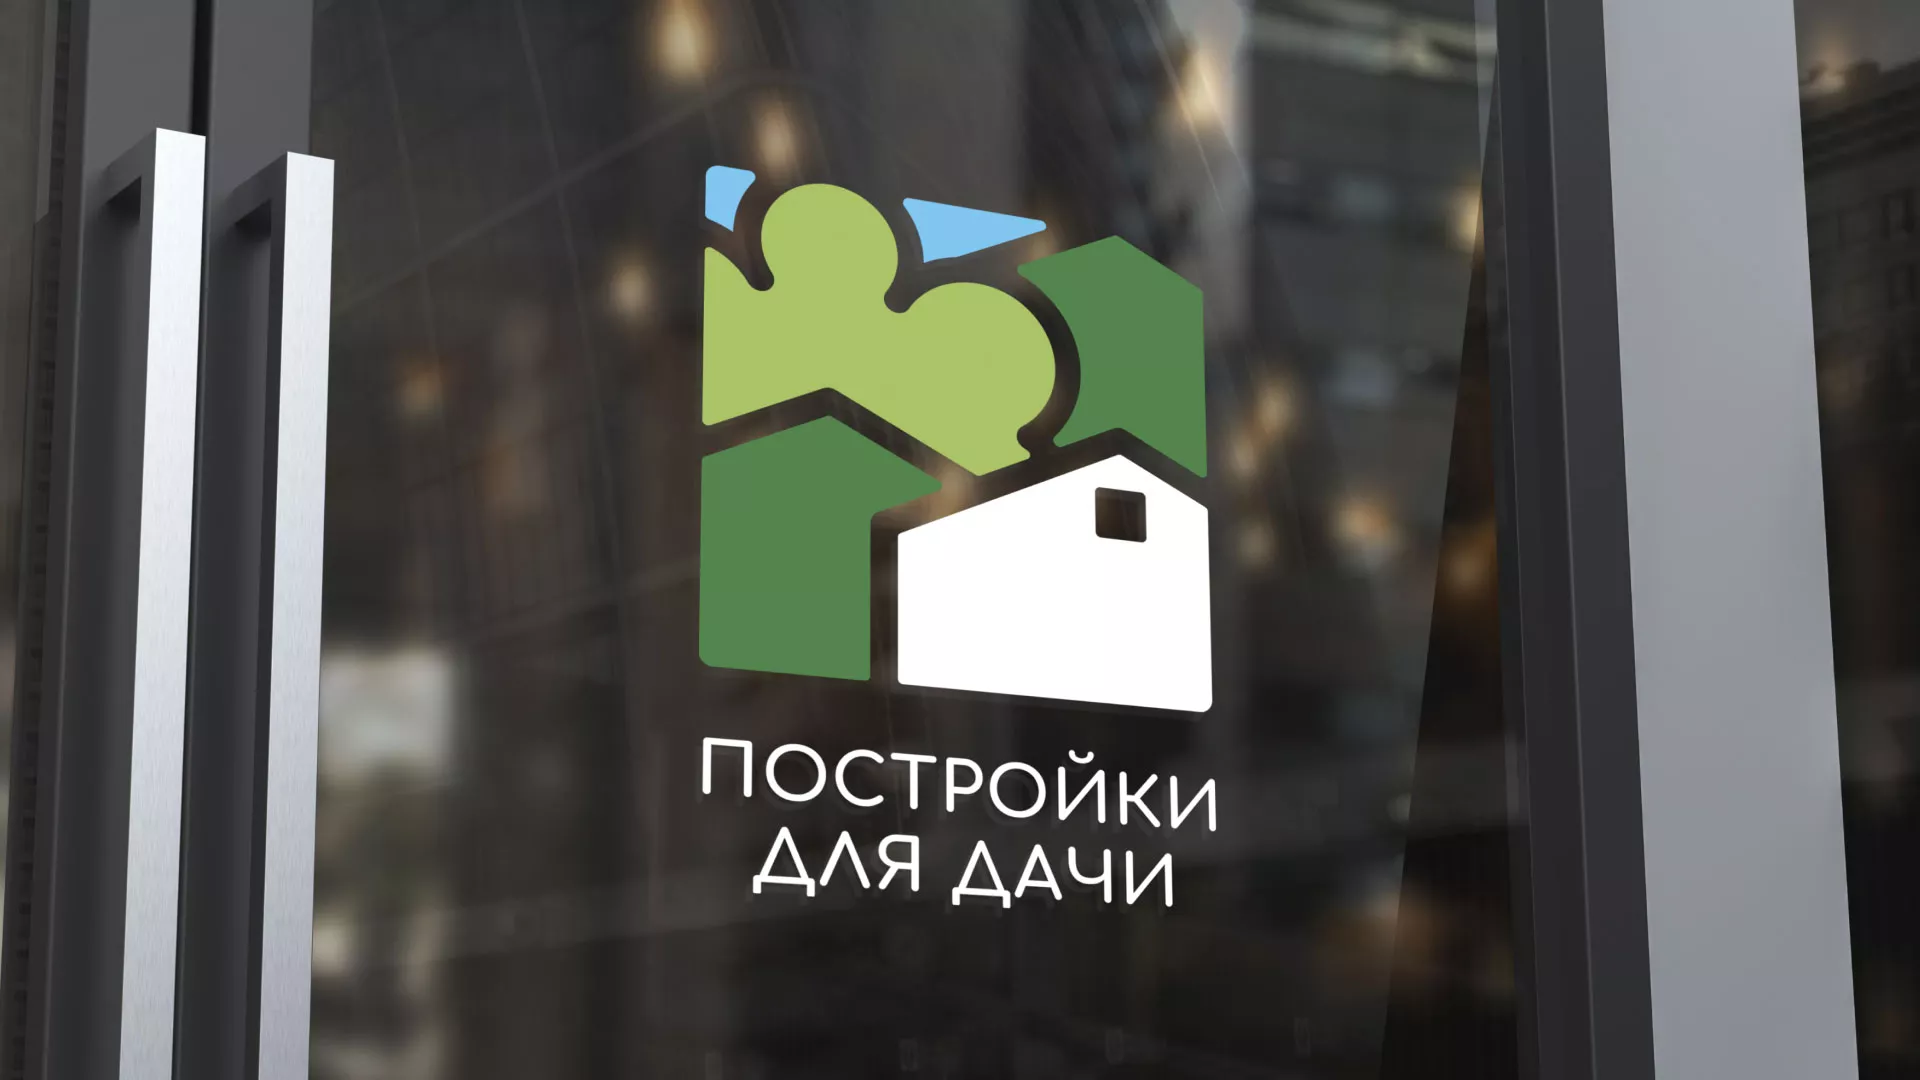 Разработка логотипа в Могоче для компании «Постройки для дачи»